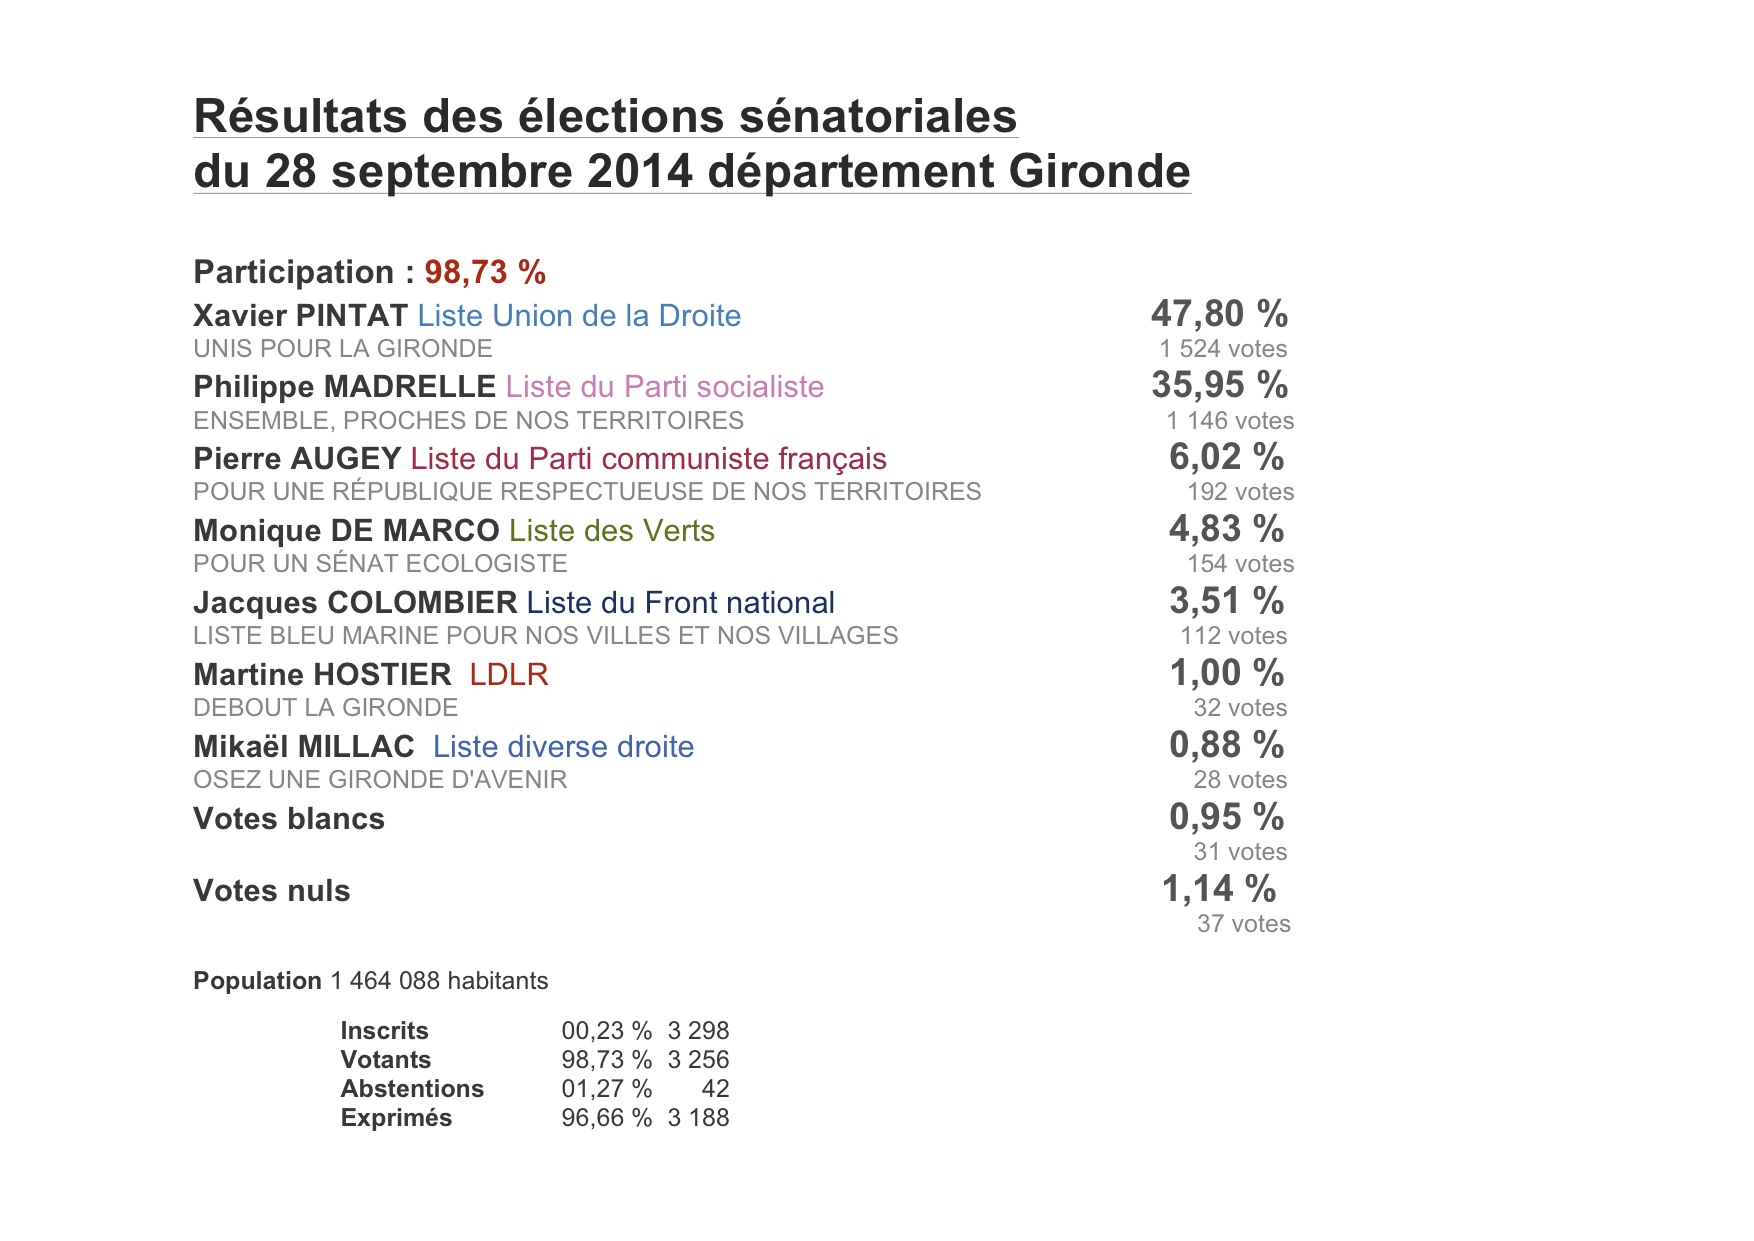 Elections sénatoriales du 28 septembre 2014